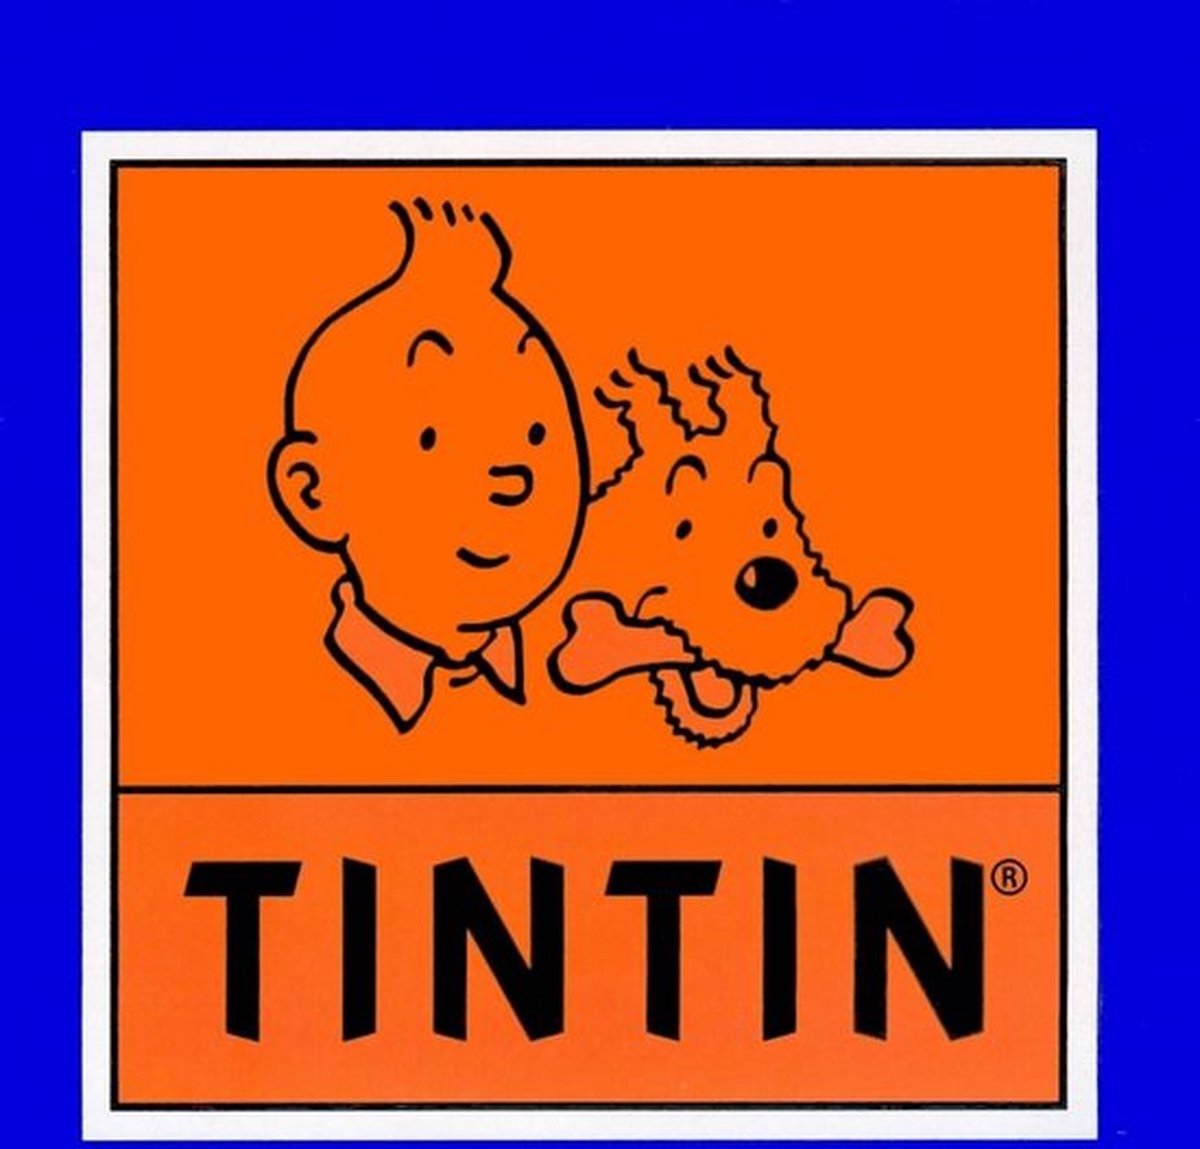 Tintin Bus Swissair From The Calculus Affair Nº2 Limited edition 1250 pieces - Bus swissair, Calculus affair, moulinsart, Saurer, Tintin, tintin bus - Gadgetz Home